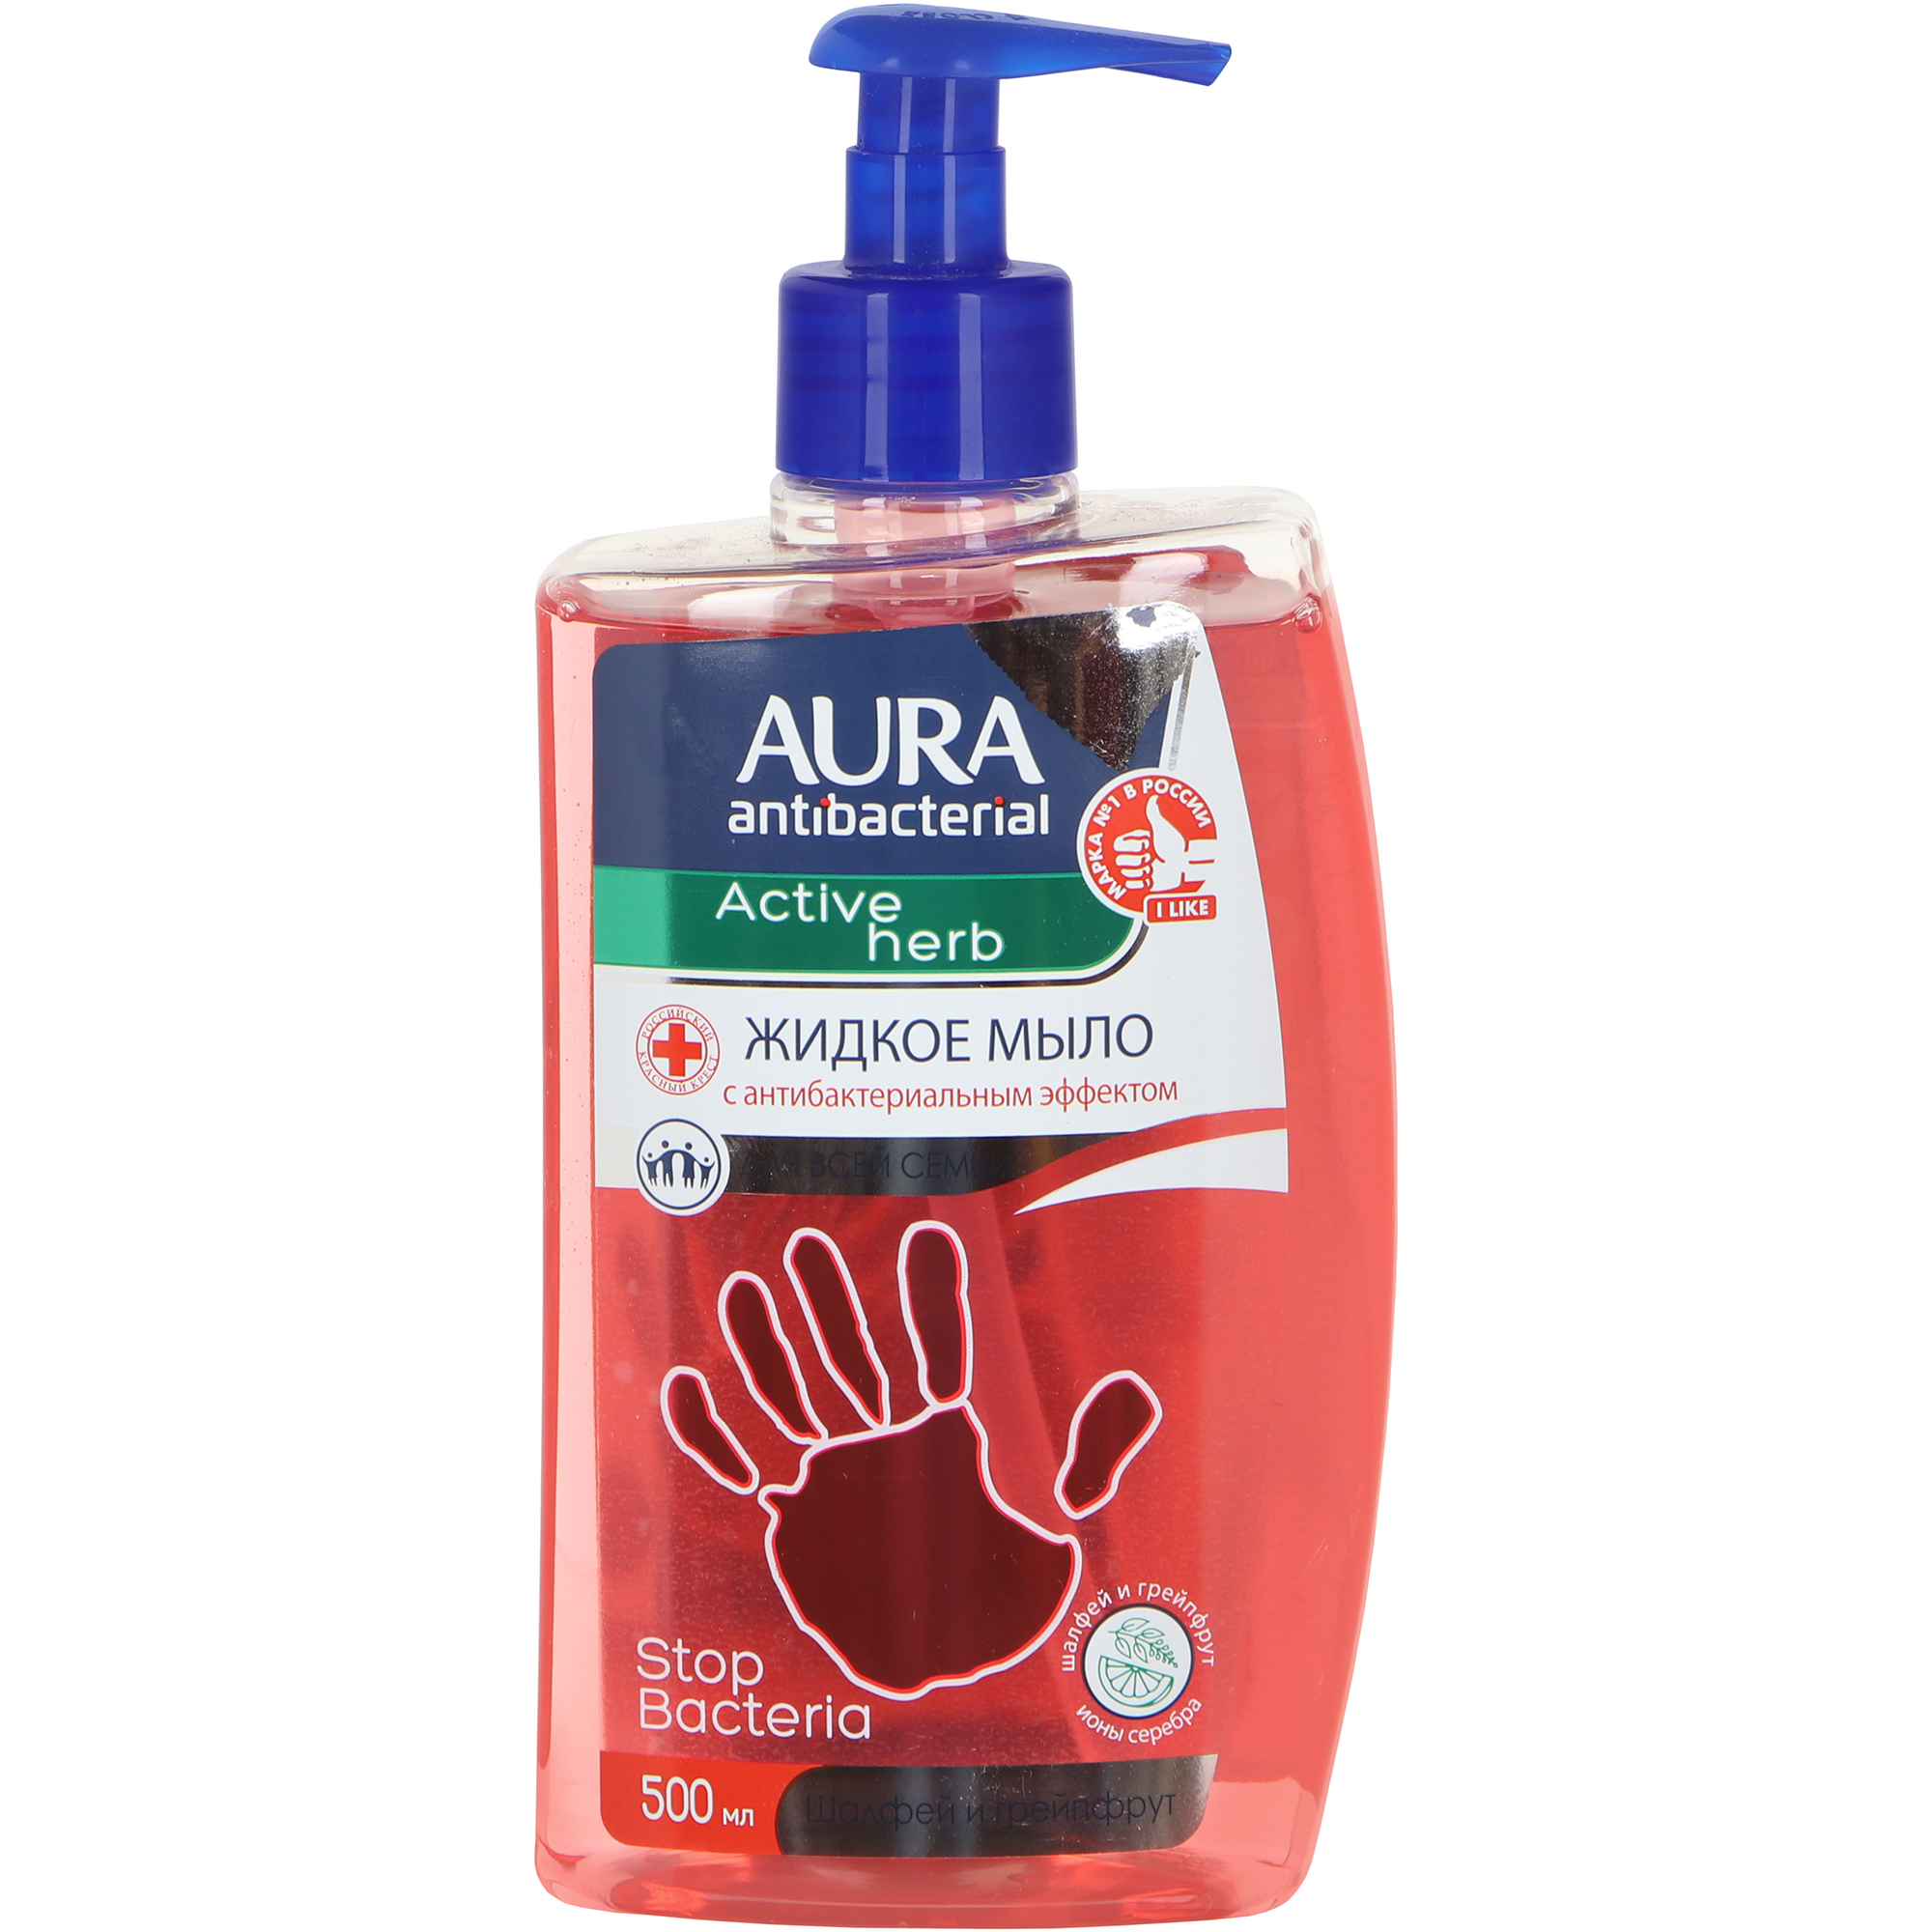 Мыло жидкое Aura с антибактериальным эффектом шалфей и грейпфрут 500 мл мыло жидкое aura с антибактериальным эффектом шалфей и грейпфрут 500 мл